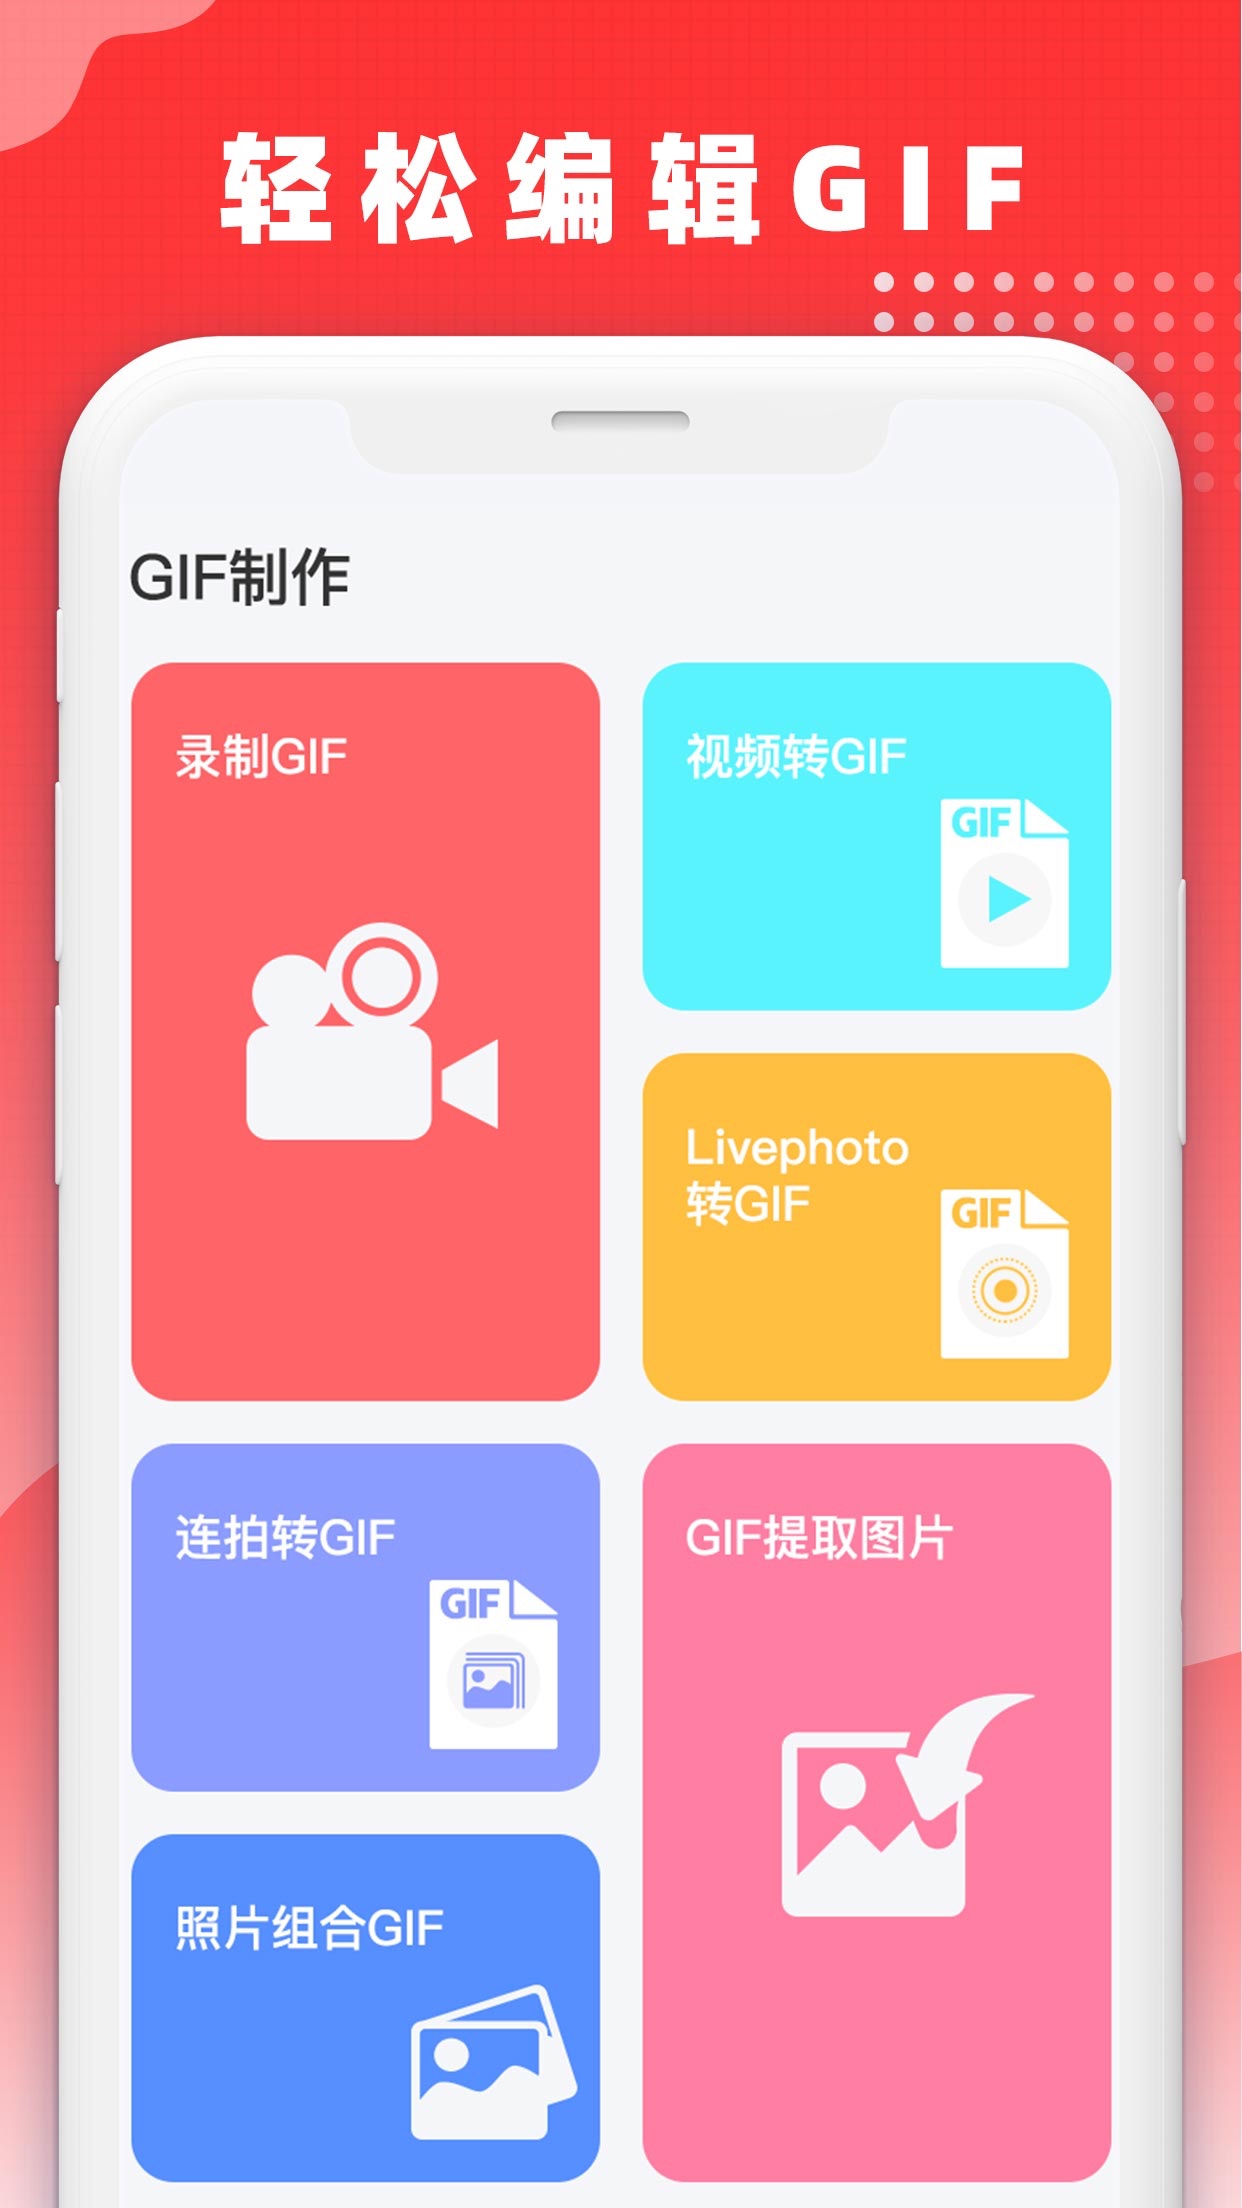 GIF表情包官方ios版下载_GIF表情包苹果版官方下载